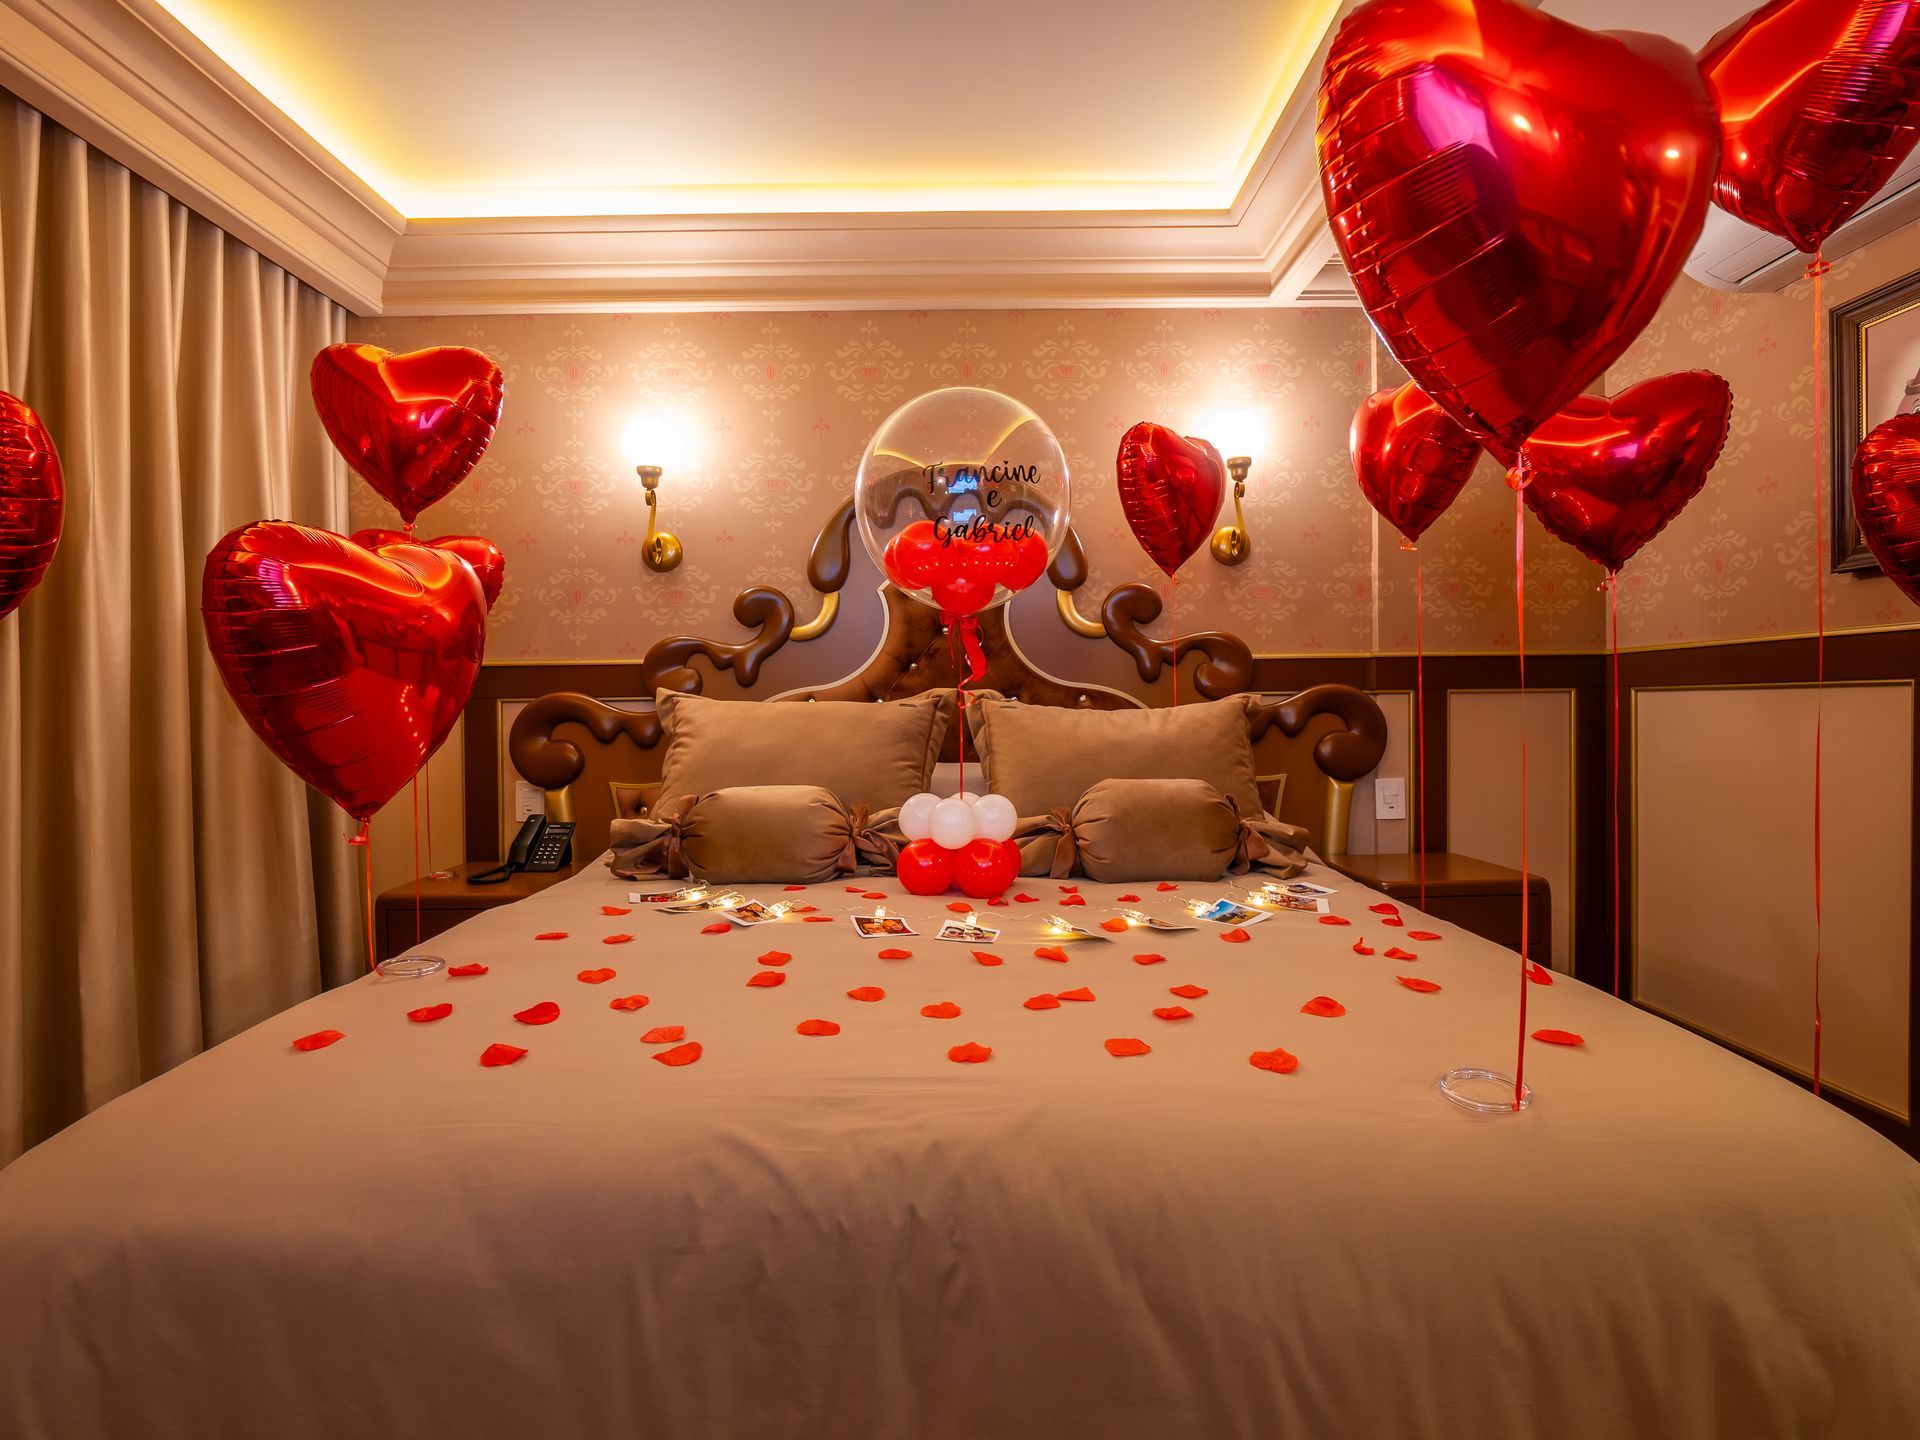 Uma cama decorada para o dia dos namorados com balões, toalhas e comida.